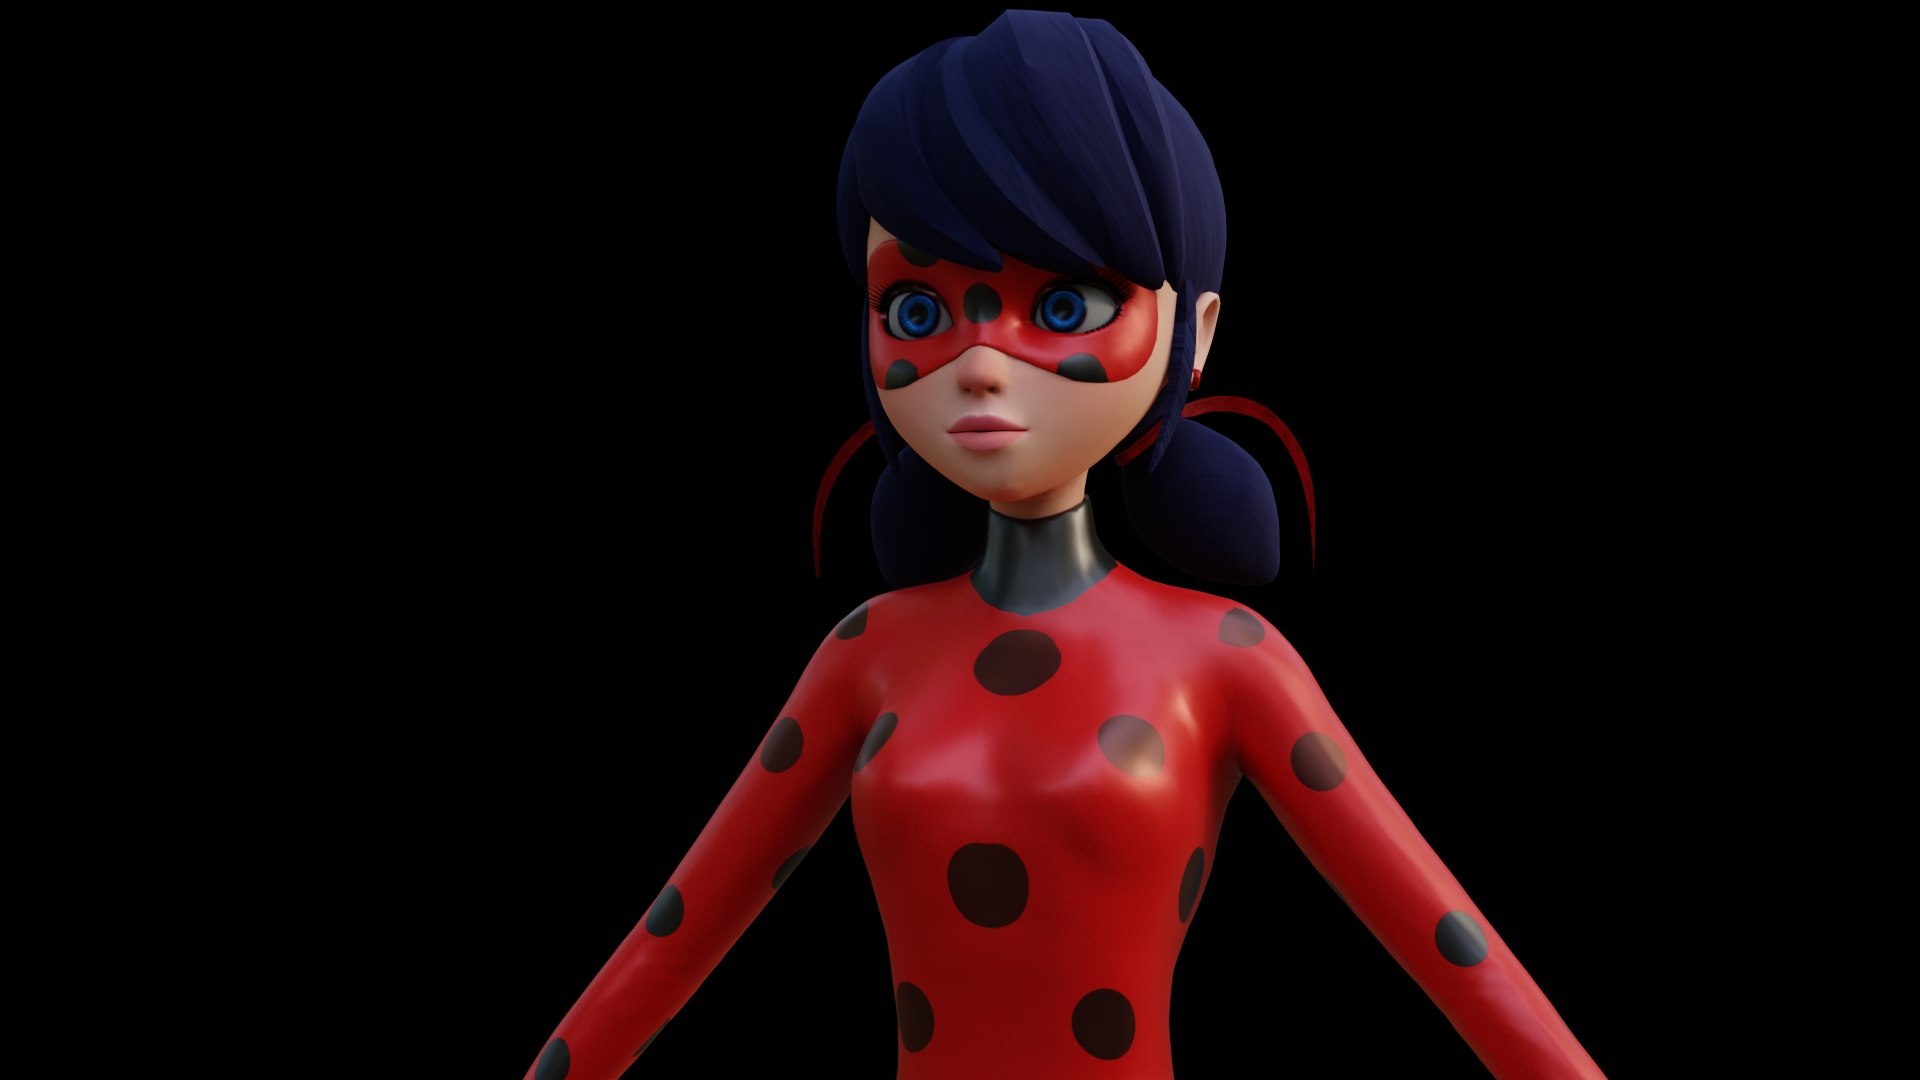 23 Miraculous Ladybug & Cat Noir Images, Stock Photos, 3D objects